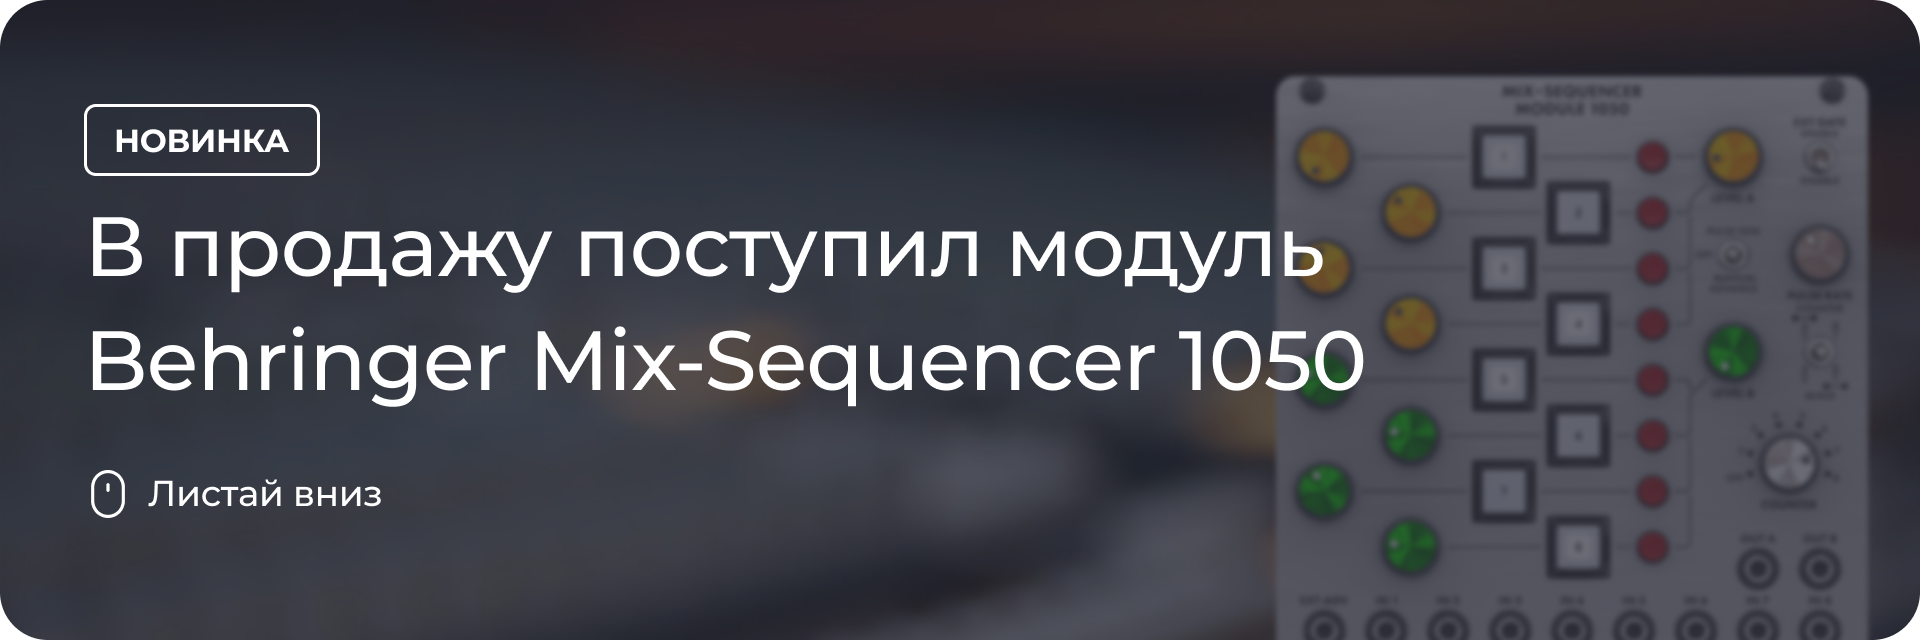 В продажу поступил модуль Behringer Mix-Sequencer 1050